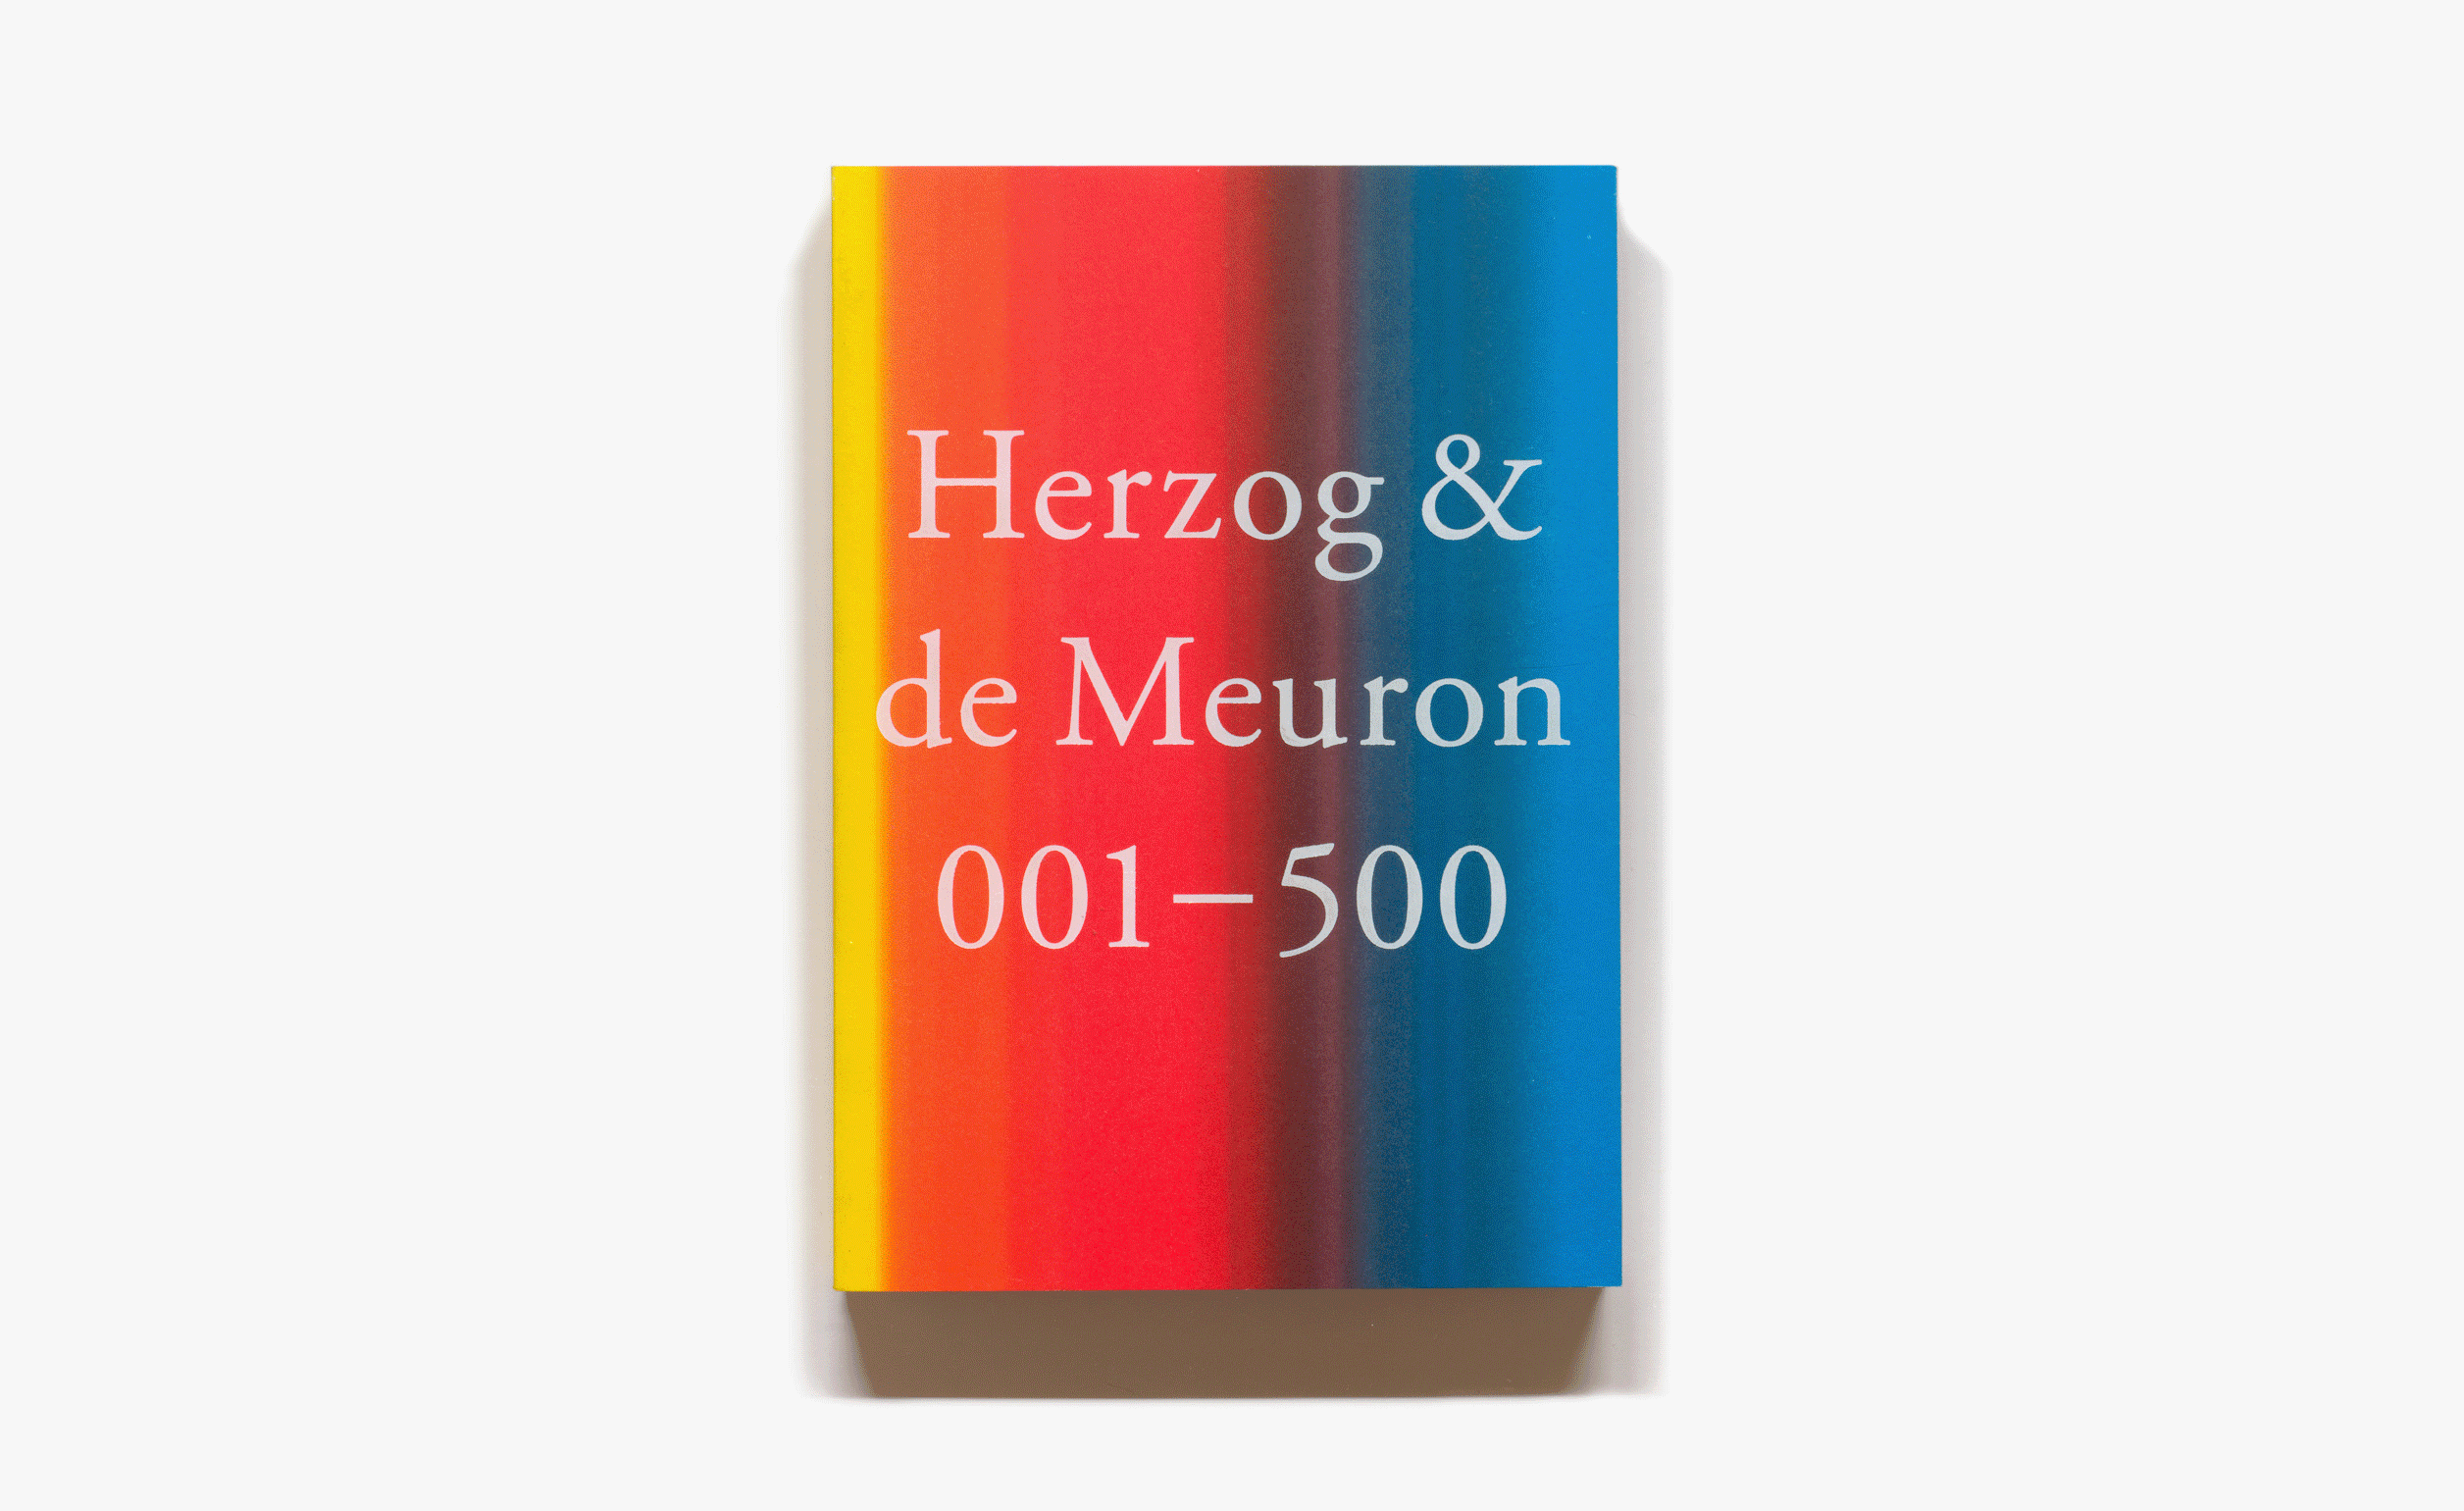 Herzog & de Meuron book cover